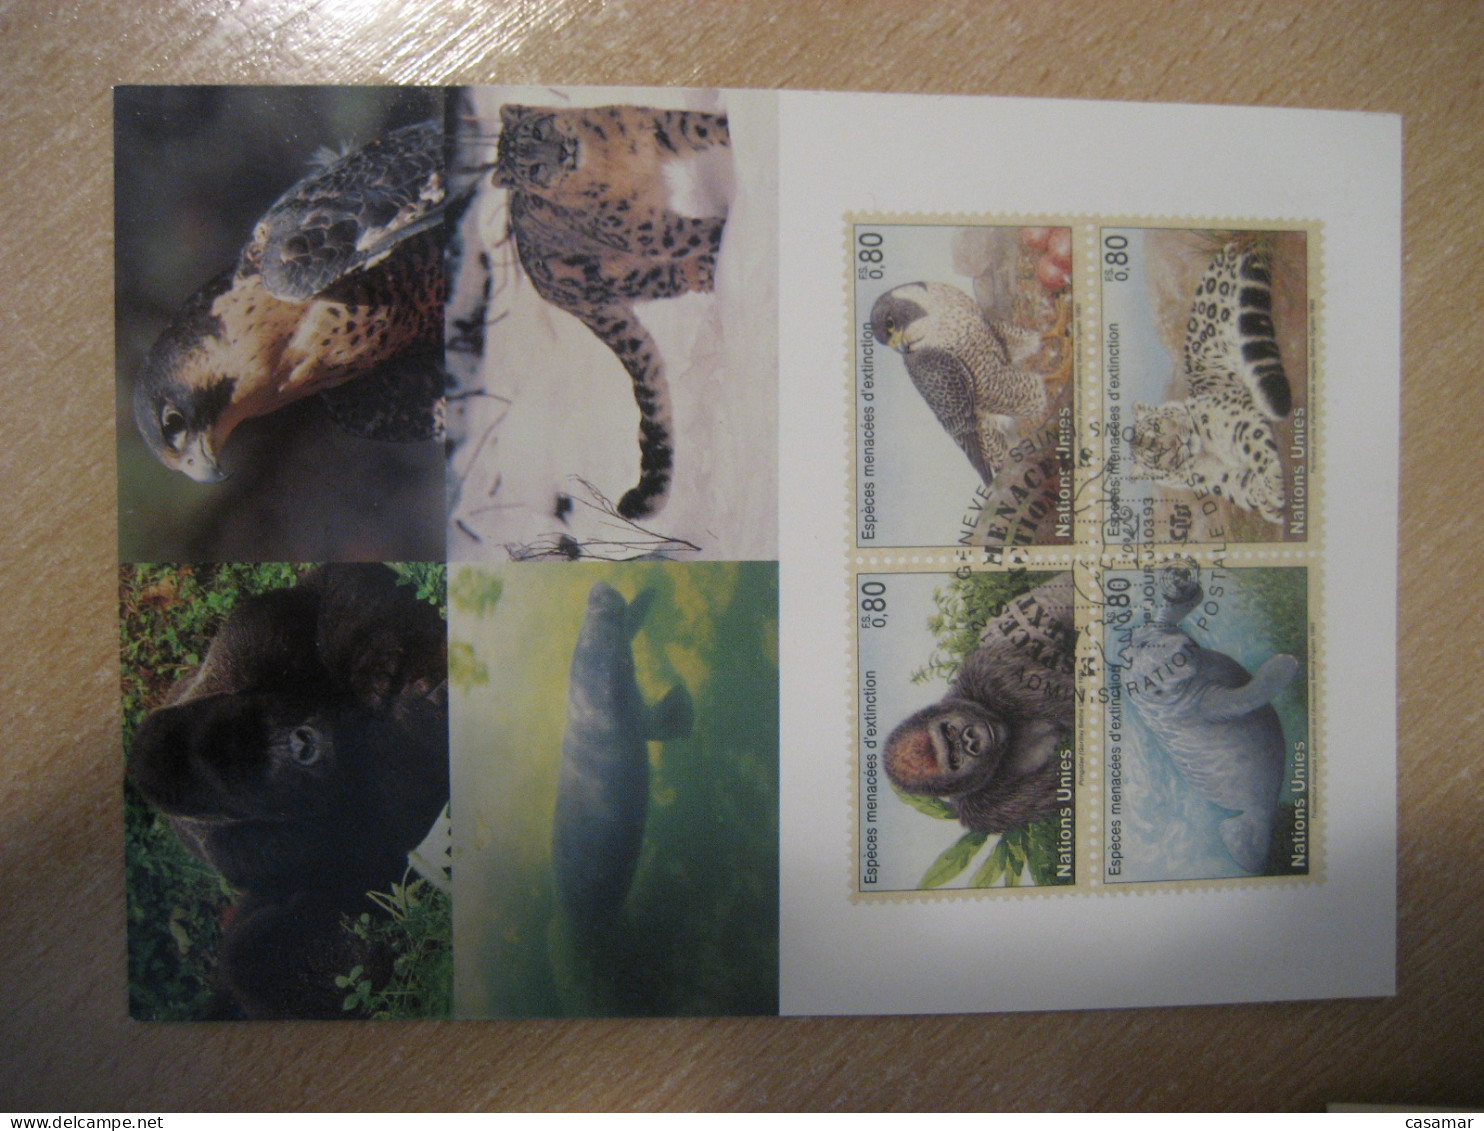 GENEVE 1993 Extinction Gorilla Gorillas Gorille Gorilles Falcon Panther Manatee Sea Cow Maxi Maximum Card UNITED NATIONS - Gorillas